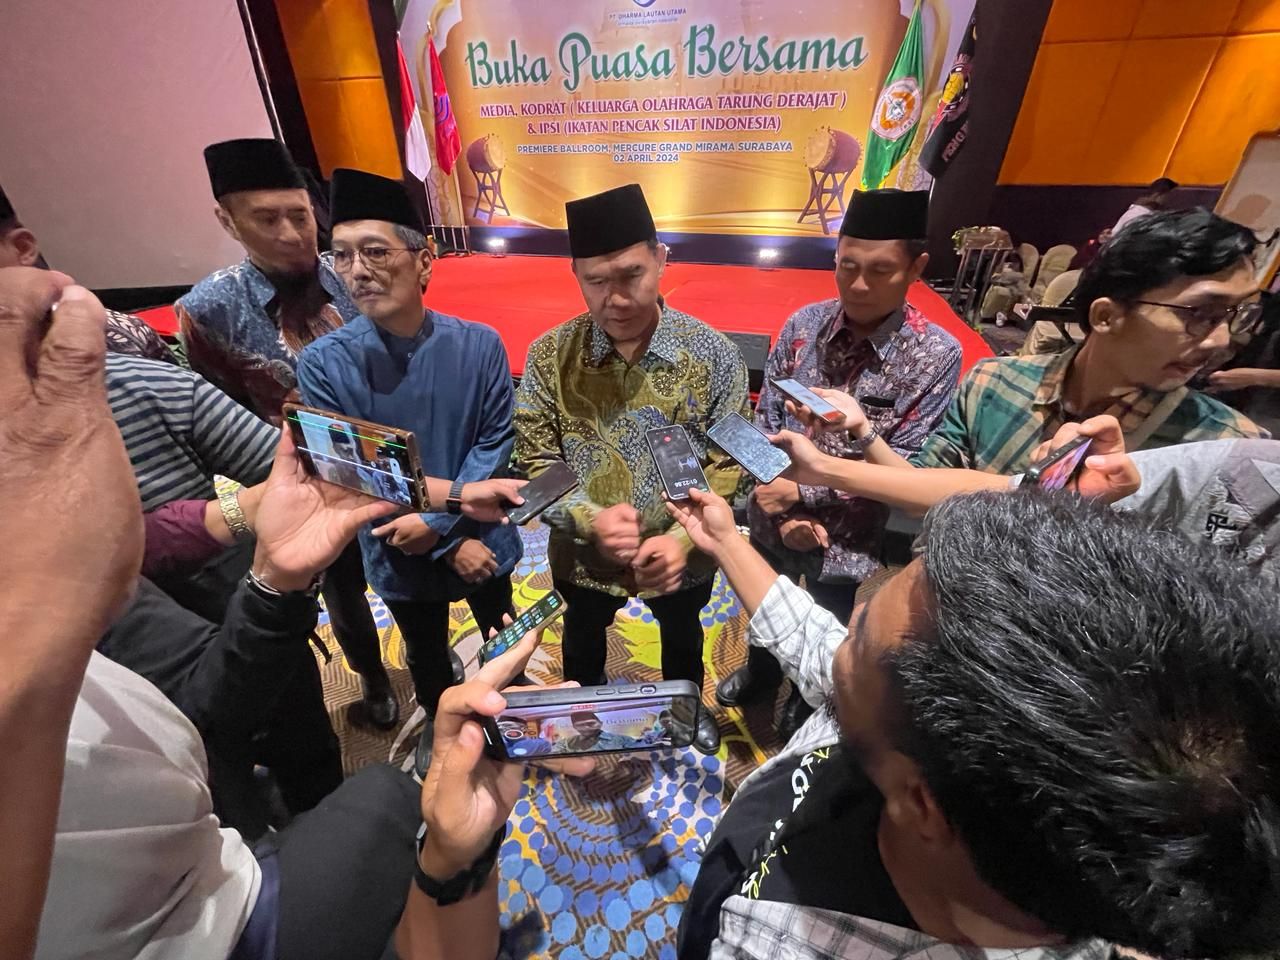 Prabowo Terpilih Jadi Presiden, BHS Optimis Pencak Silat Makin Maju di Indonesia